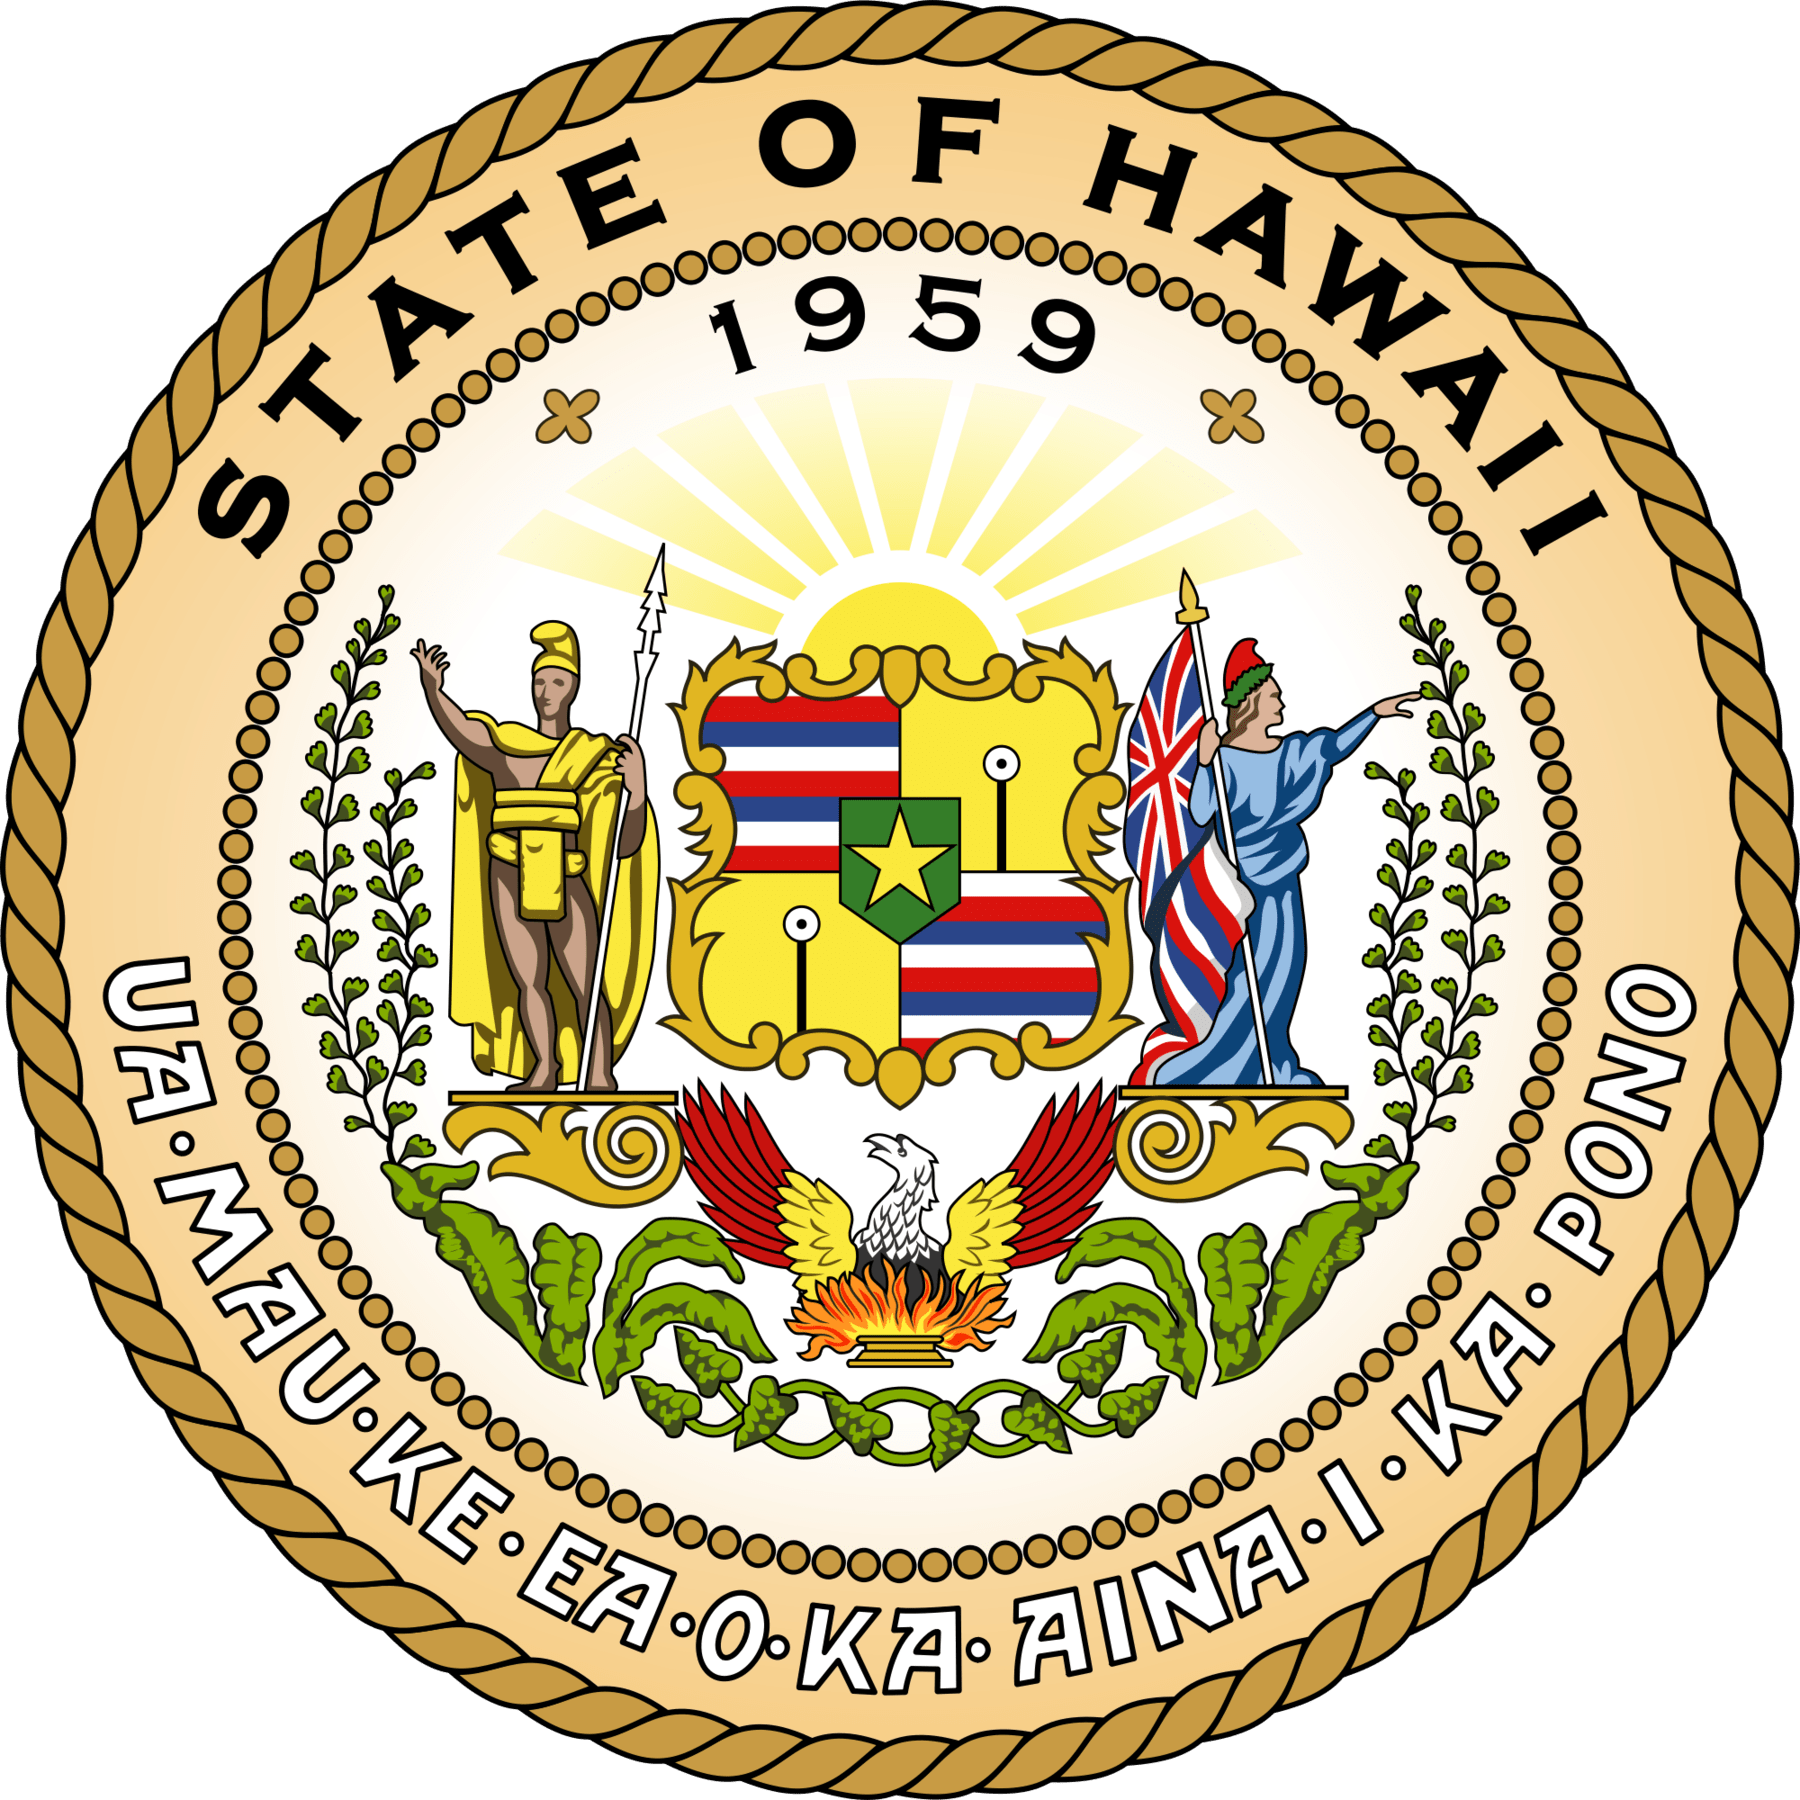 Hawaii 529 Plan Rules